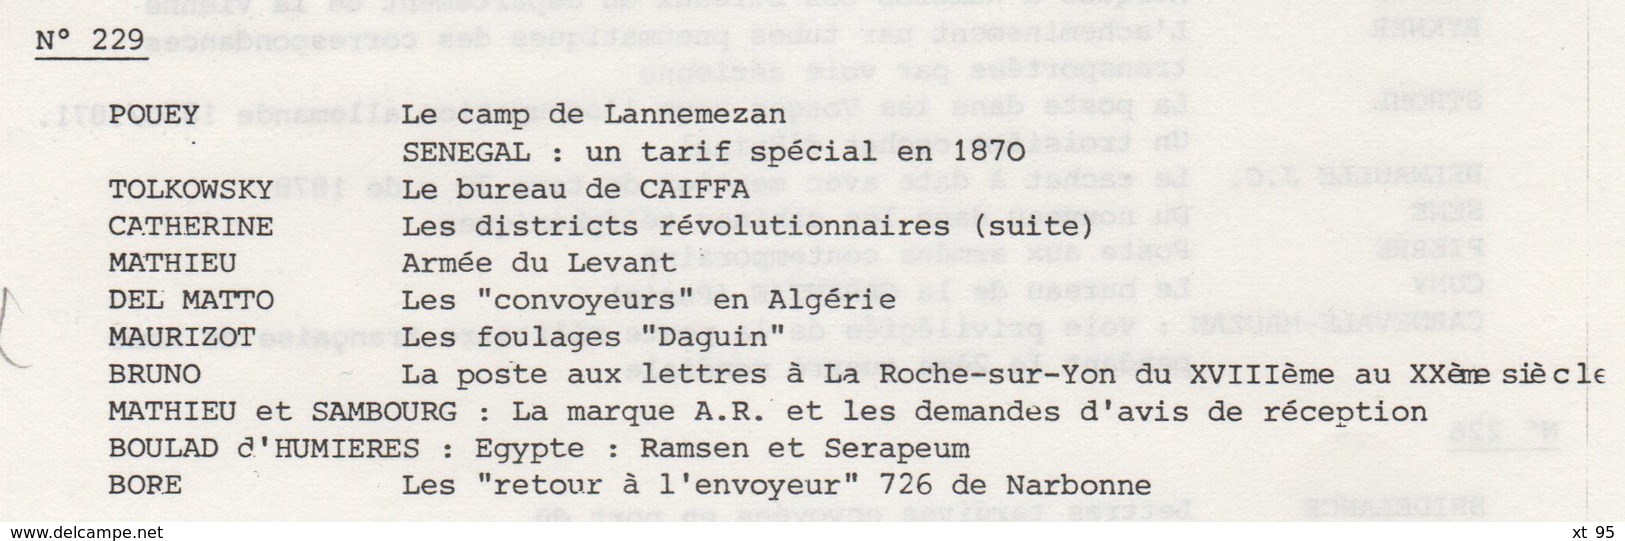 Les Feuilles Marcophiles - N°229 - Voir Sommaire - Frais De Port 2€ - Philatelie Und Postgeschichte